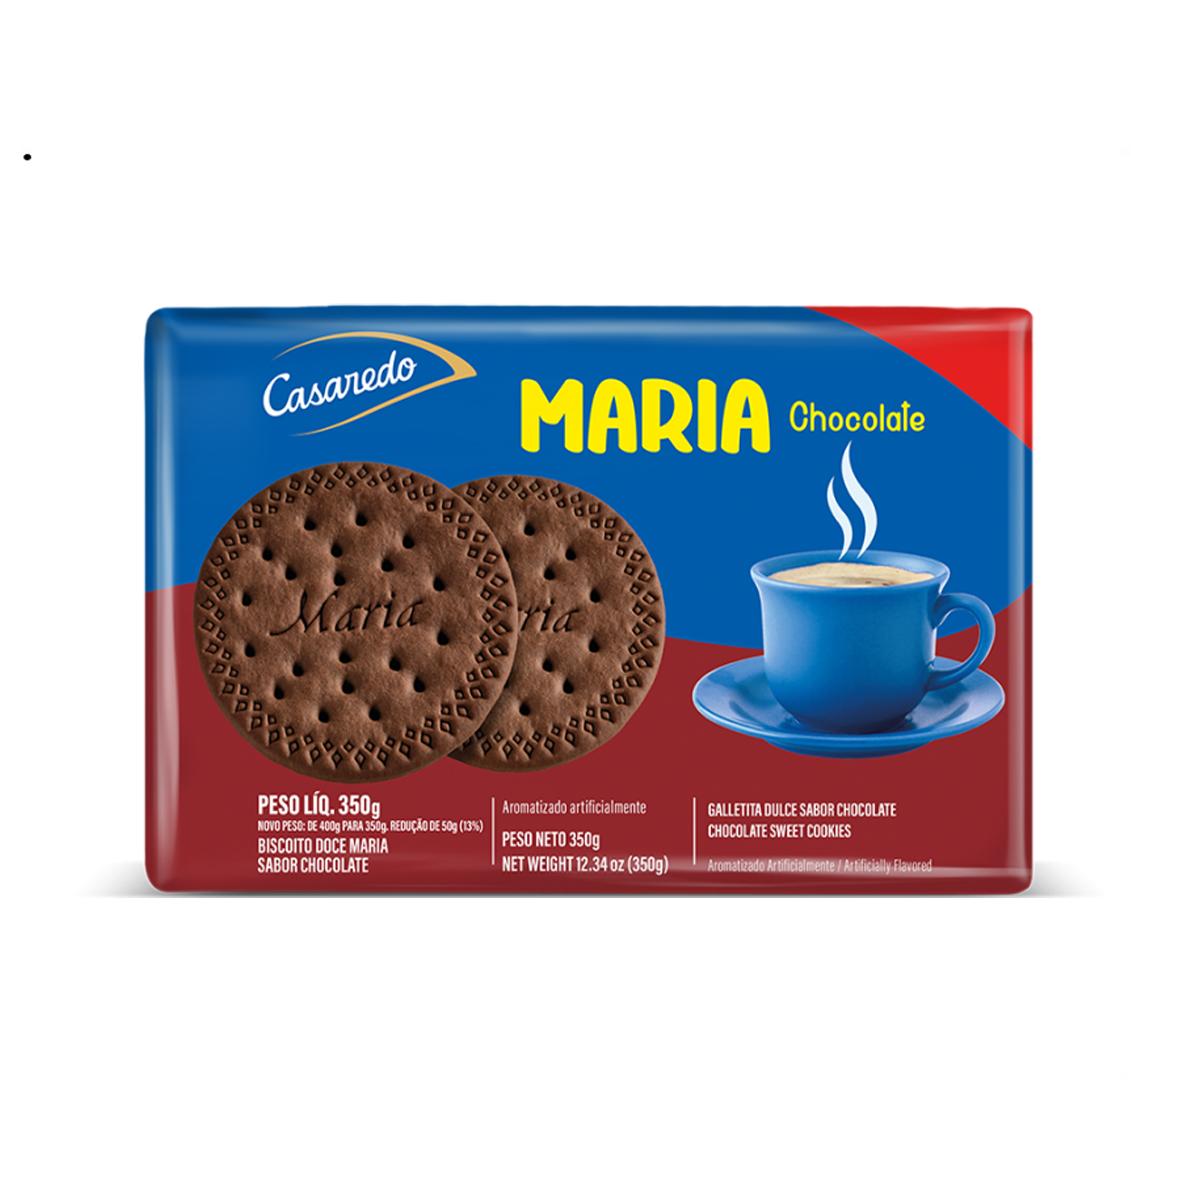 Galletas María sabor chocolate Casaredo (3 x 350 g / 12.34 oz)